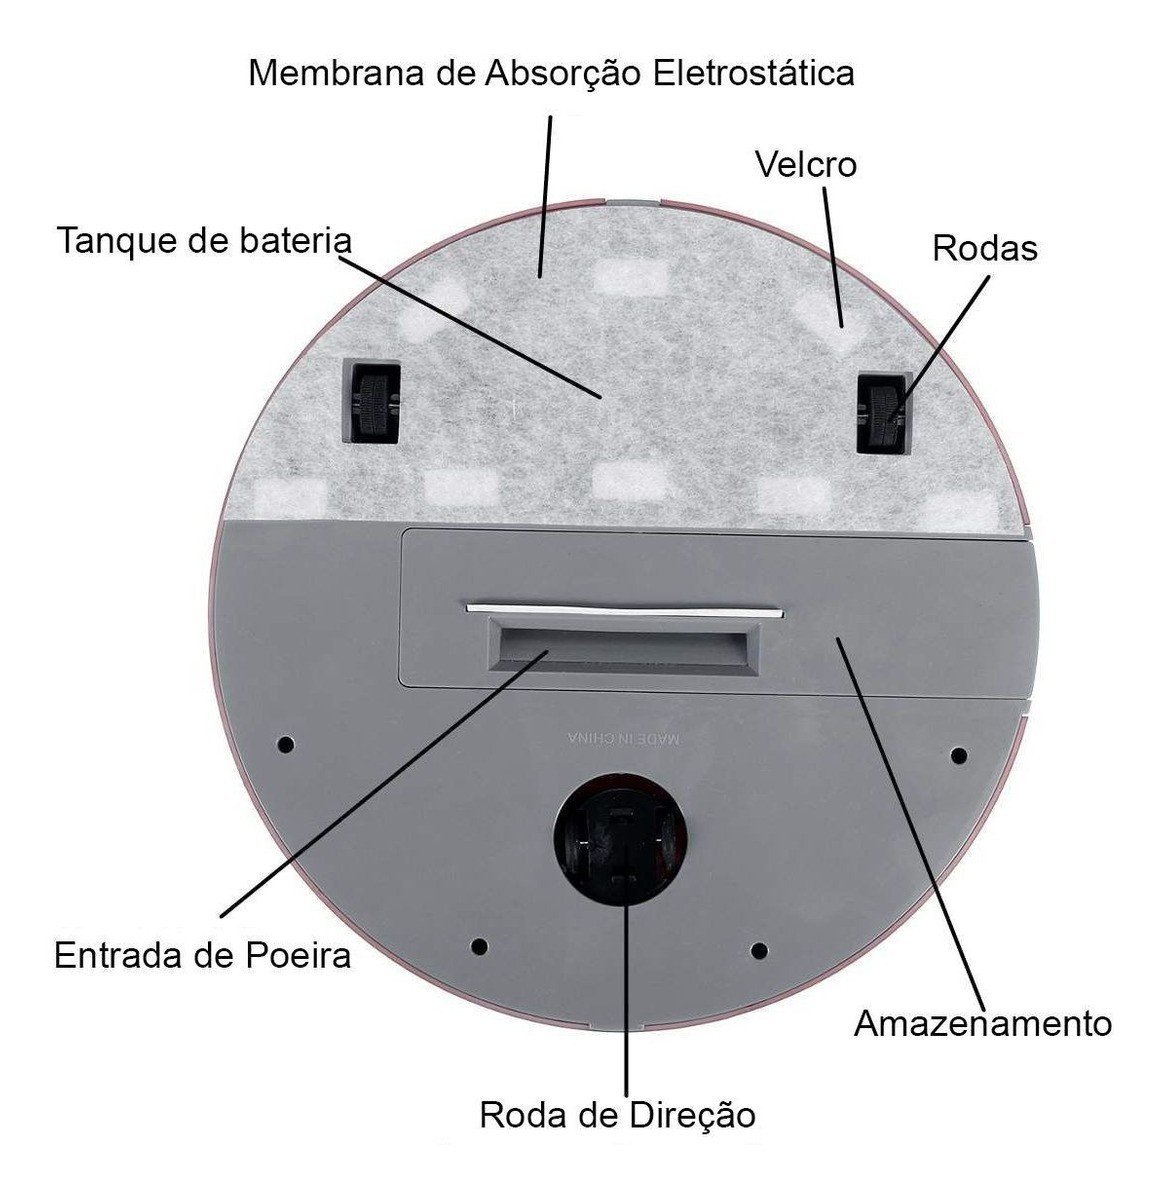 Robo Aspirador Limpeza Inteligente Faxina Passa Pano Automatico Sensor Anti Queda Obstaculos Arruma - 9